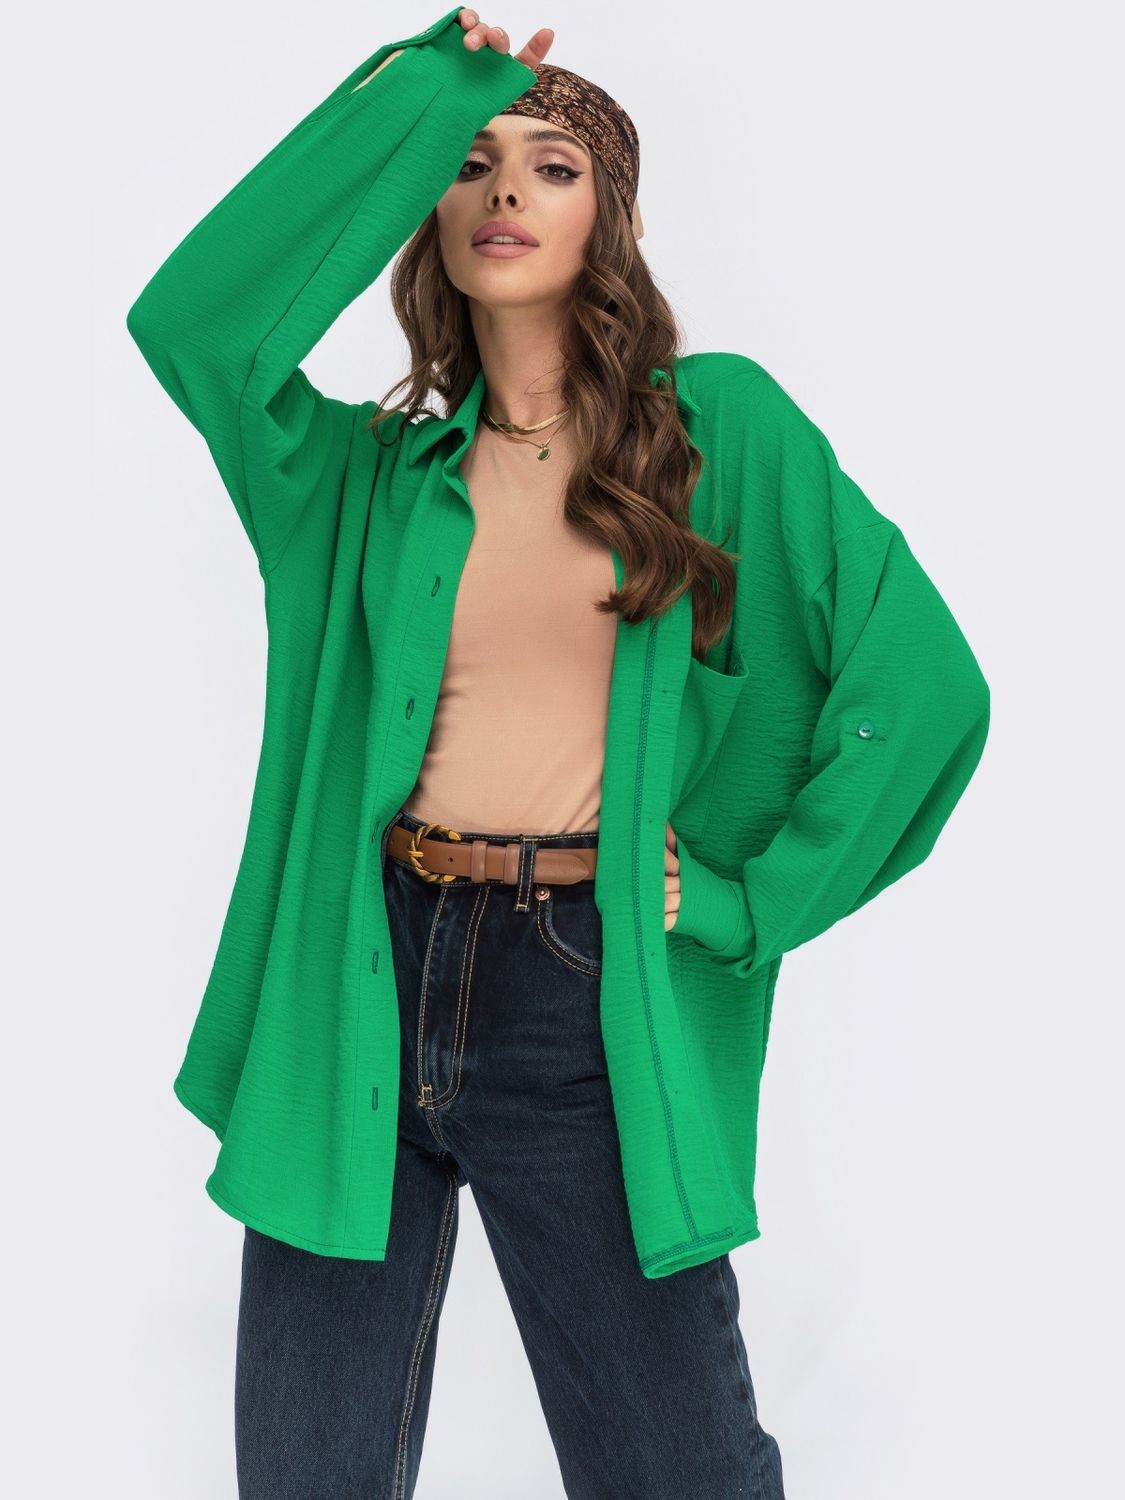 Льняная рубашка в стиле оверсайз зеленого цвета - фото